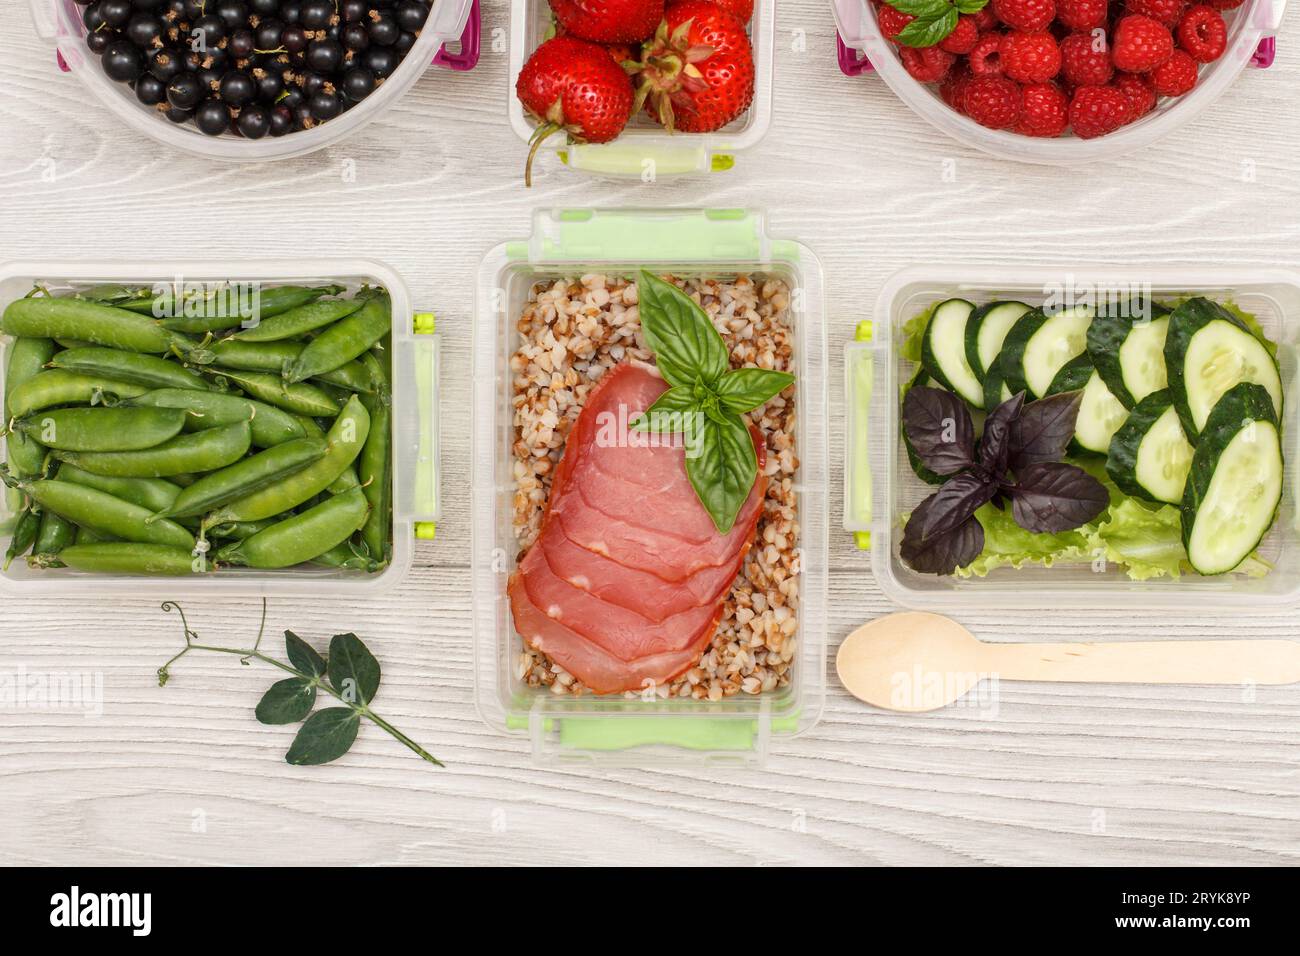 Contenants en plastique pour la préparation des repas avec bouillie de sarrasin, viande, légumes et fruits. Banque D'Images